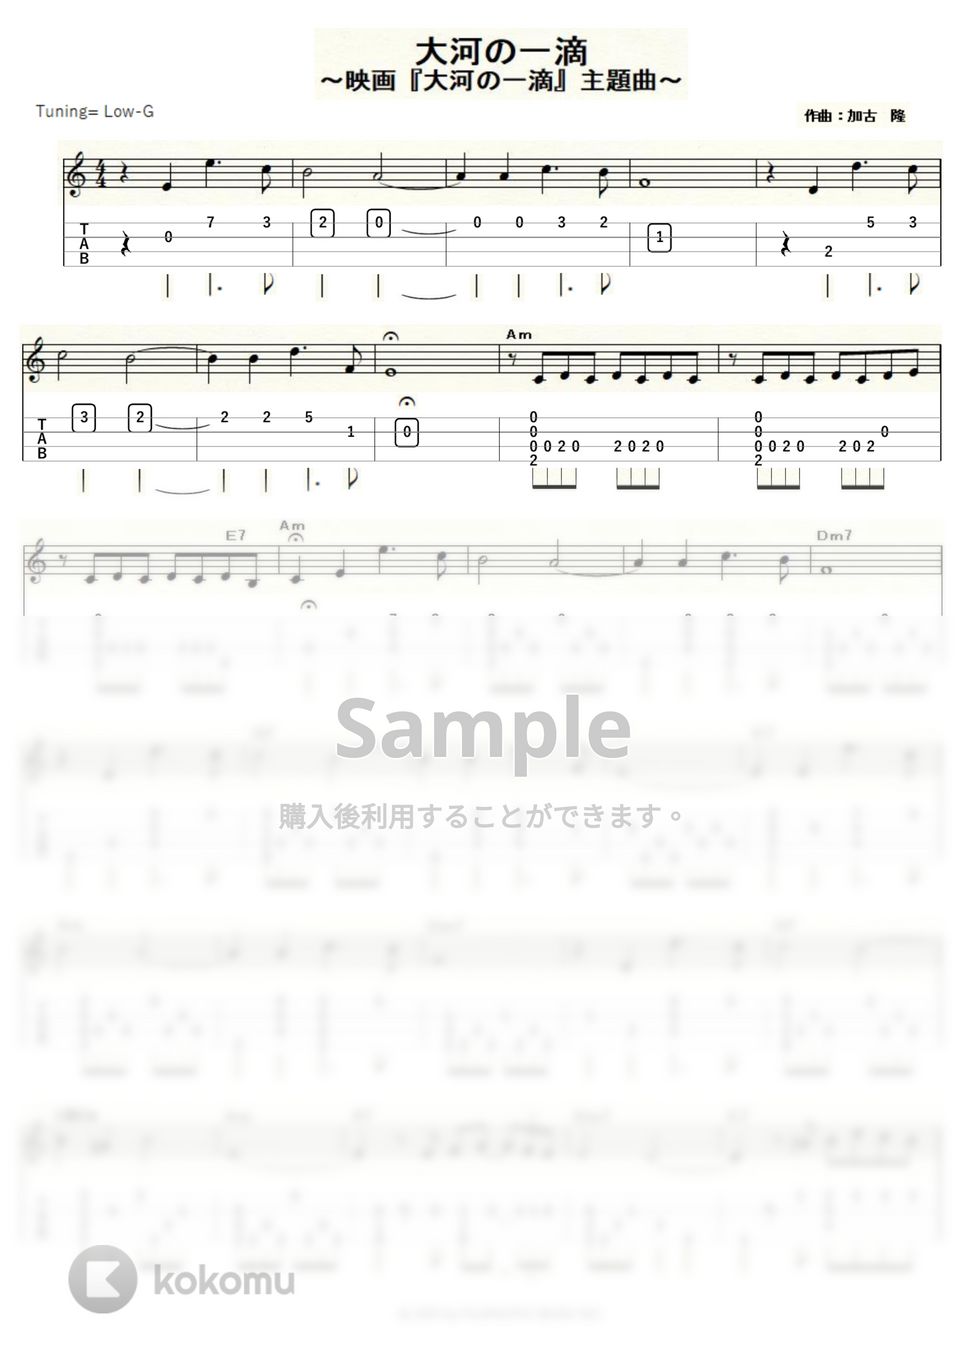 大河の一滴 - 大河の一滴 (ｳｸﾚﾚｿﾛ / Low-G / 中級<加古　隆>) by ukulelepapa